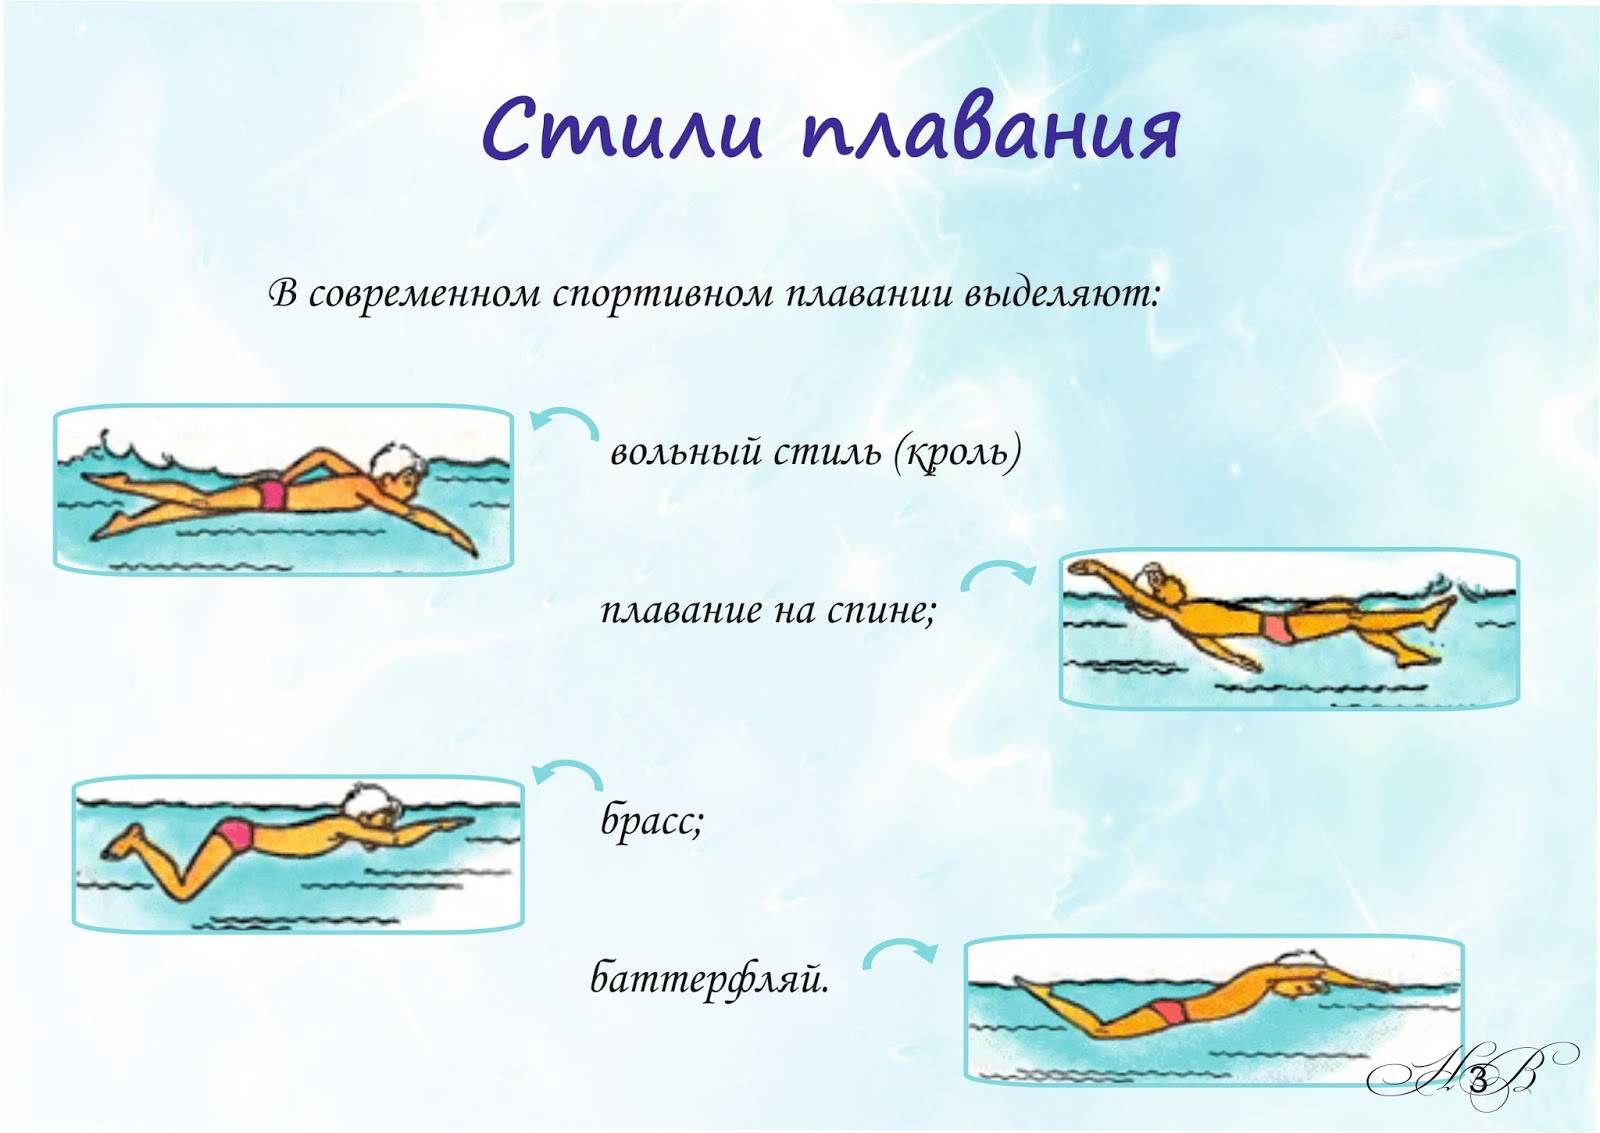 Плавание на спине: описание и виды, как правильно плавать этим стилем для позвоночника, а также нормативы, разряды, дистанция и правила соревнований